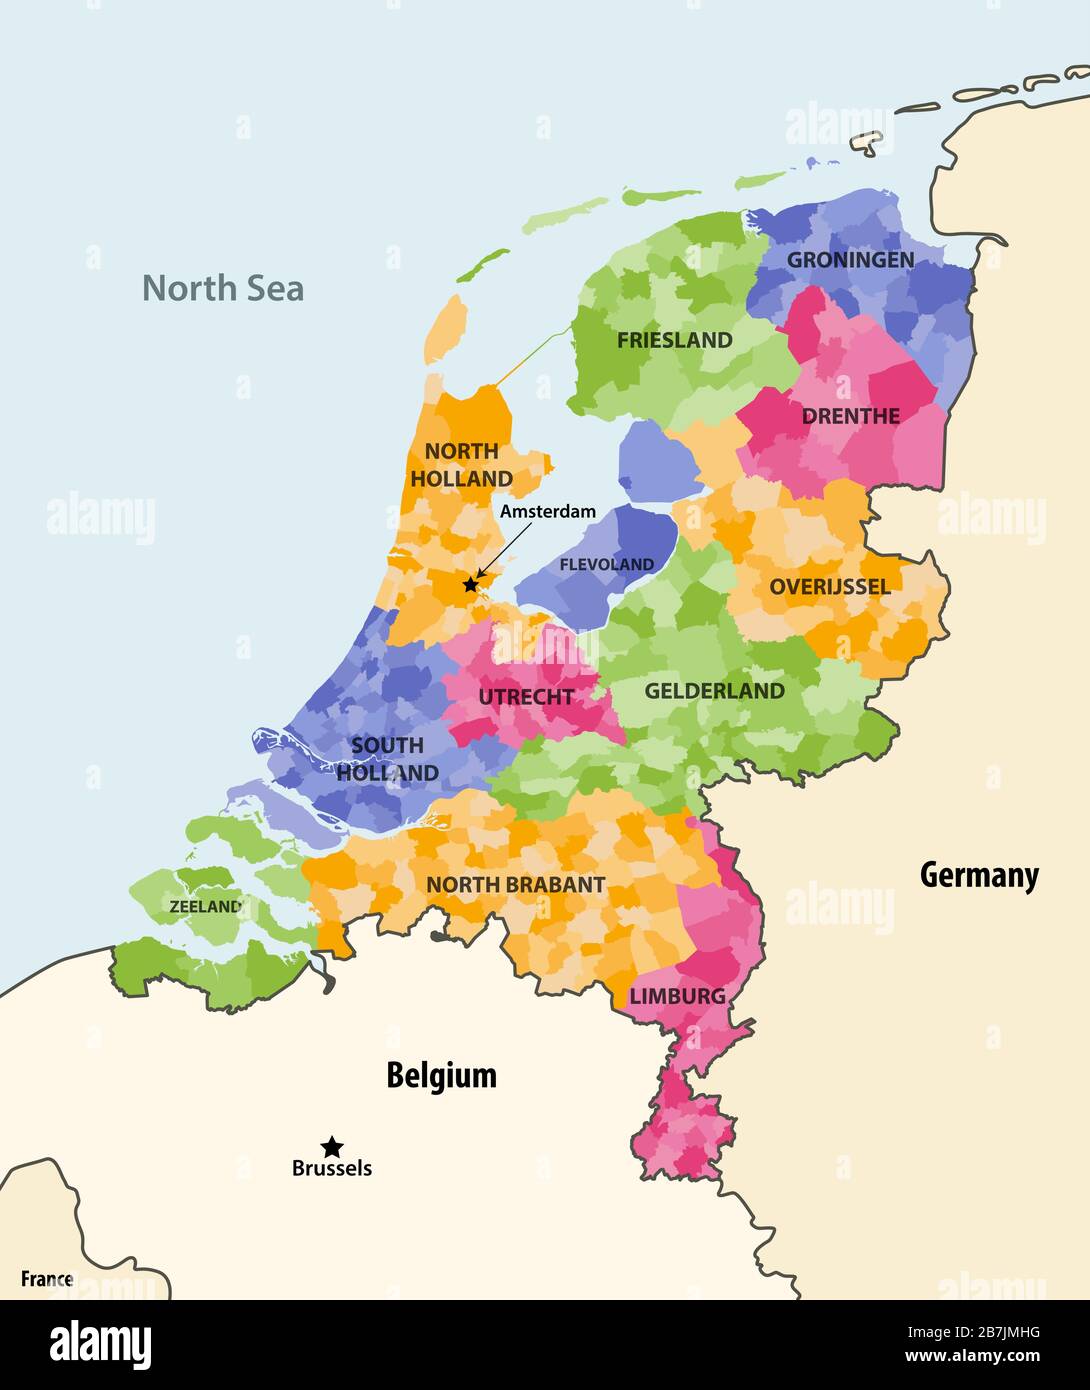 Les municipalités locales des Pays-Bas colorées par les provinces sont  cartographées avec les pays voisins et les terrroitiers. Vecteur Image  Vectorielle Stock - Alamy